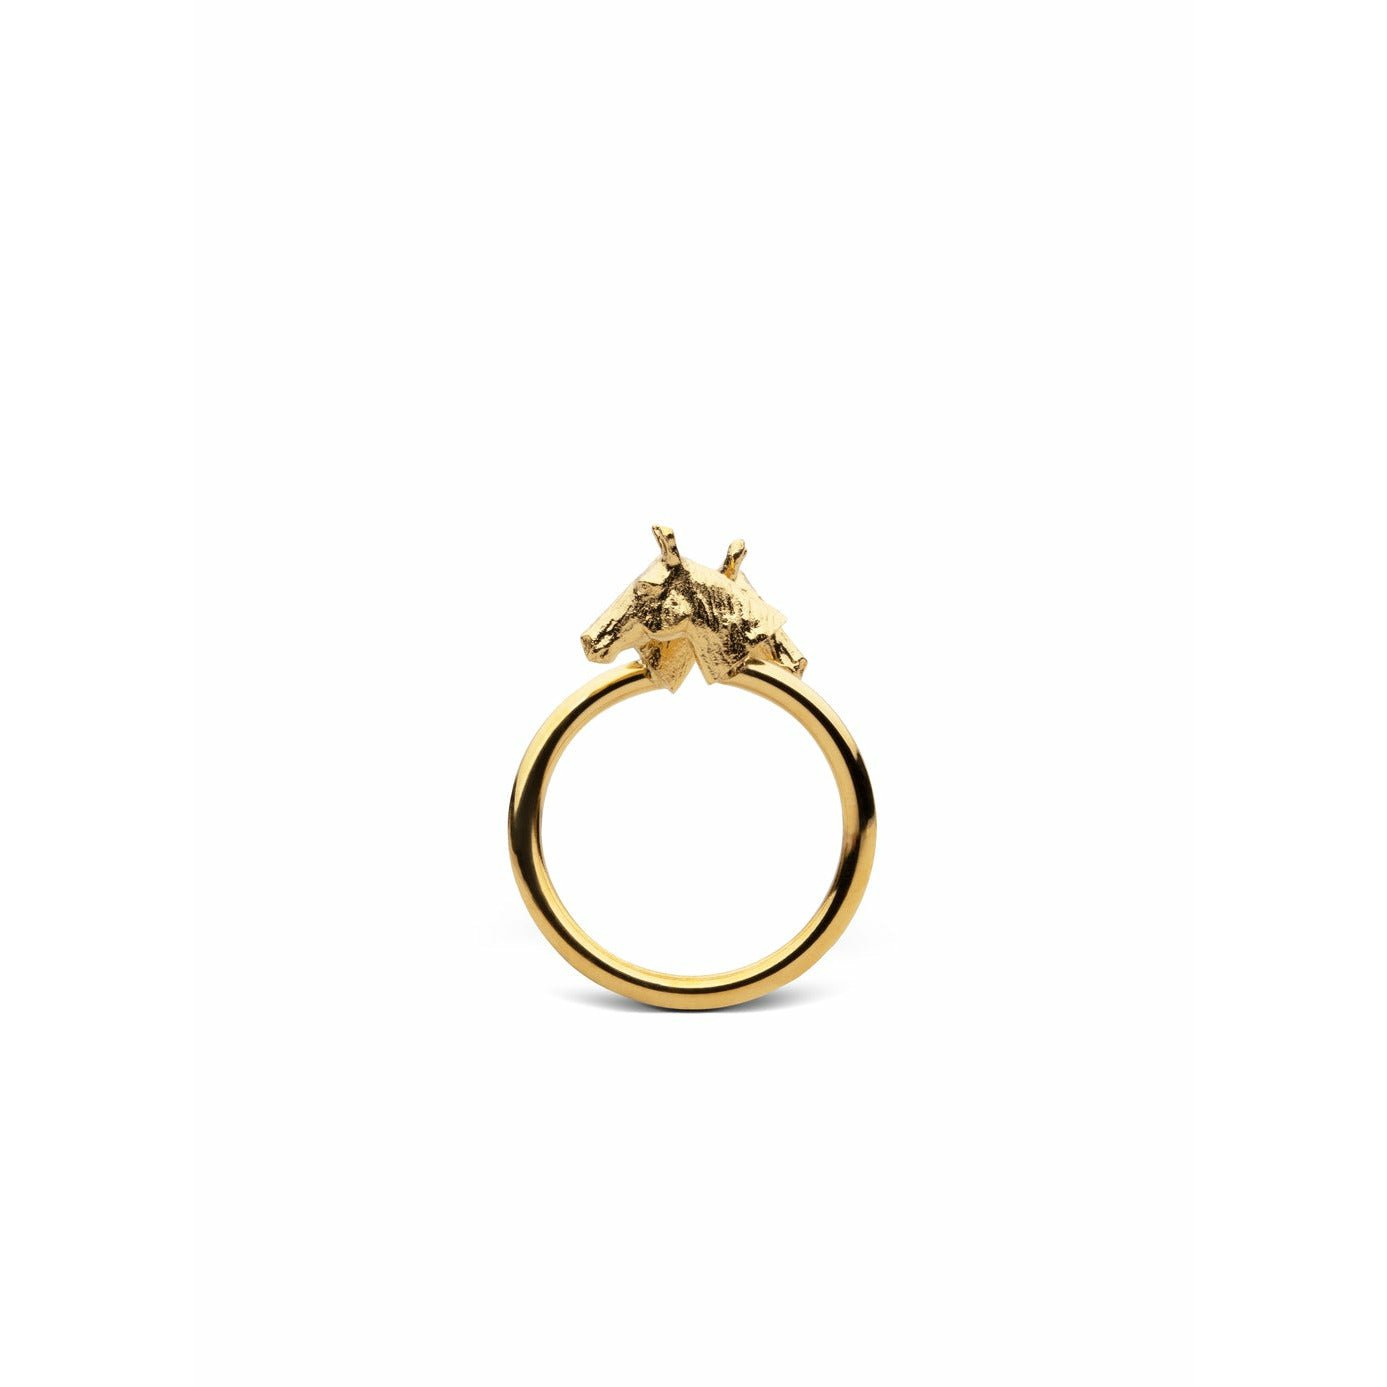 Skultuna chêne ring koňský prsten malé zlaté pokovené, Ø1,6 cm